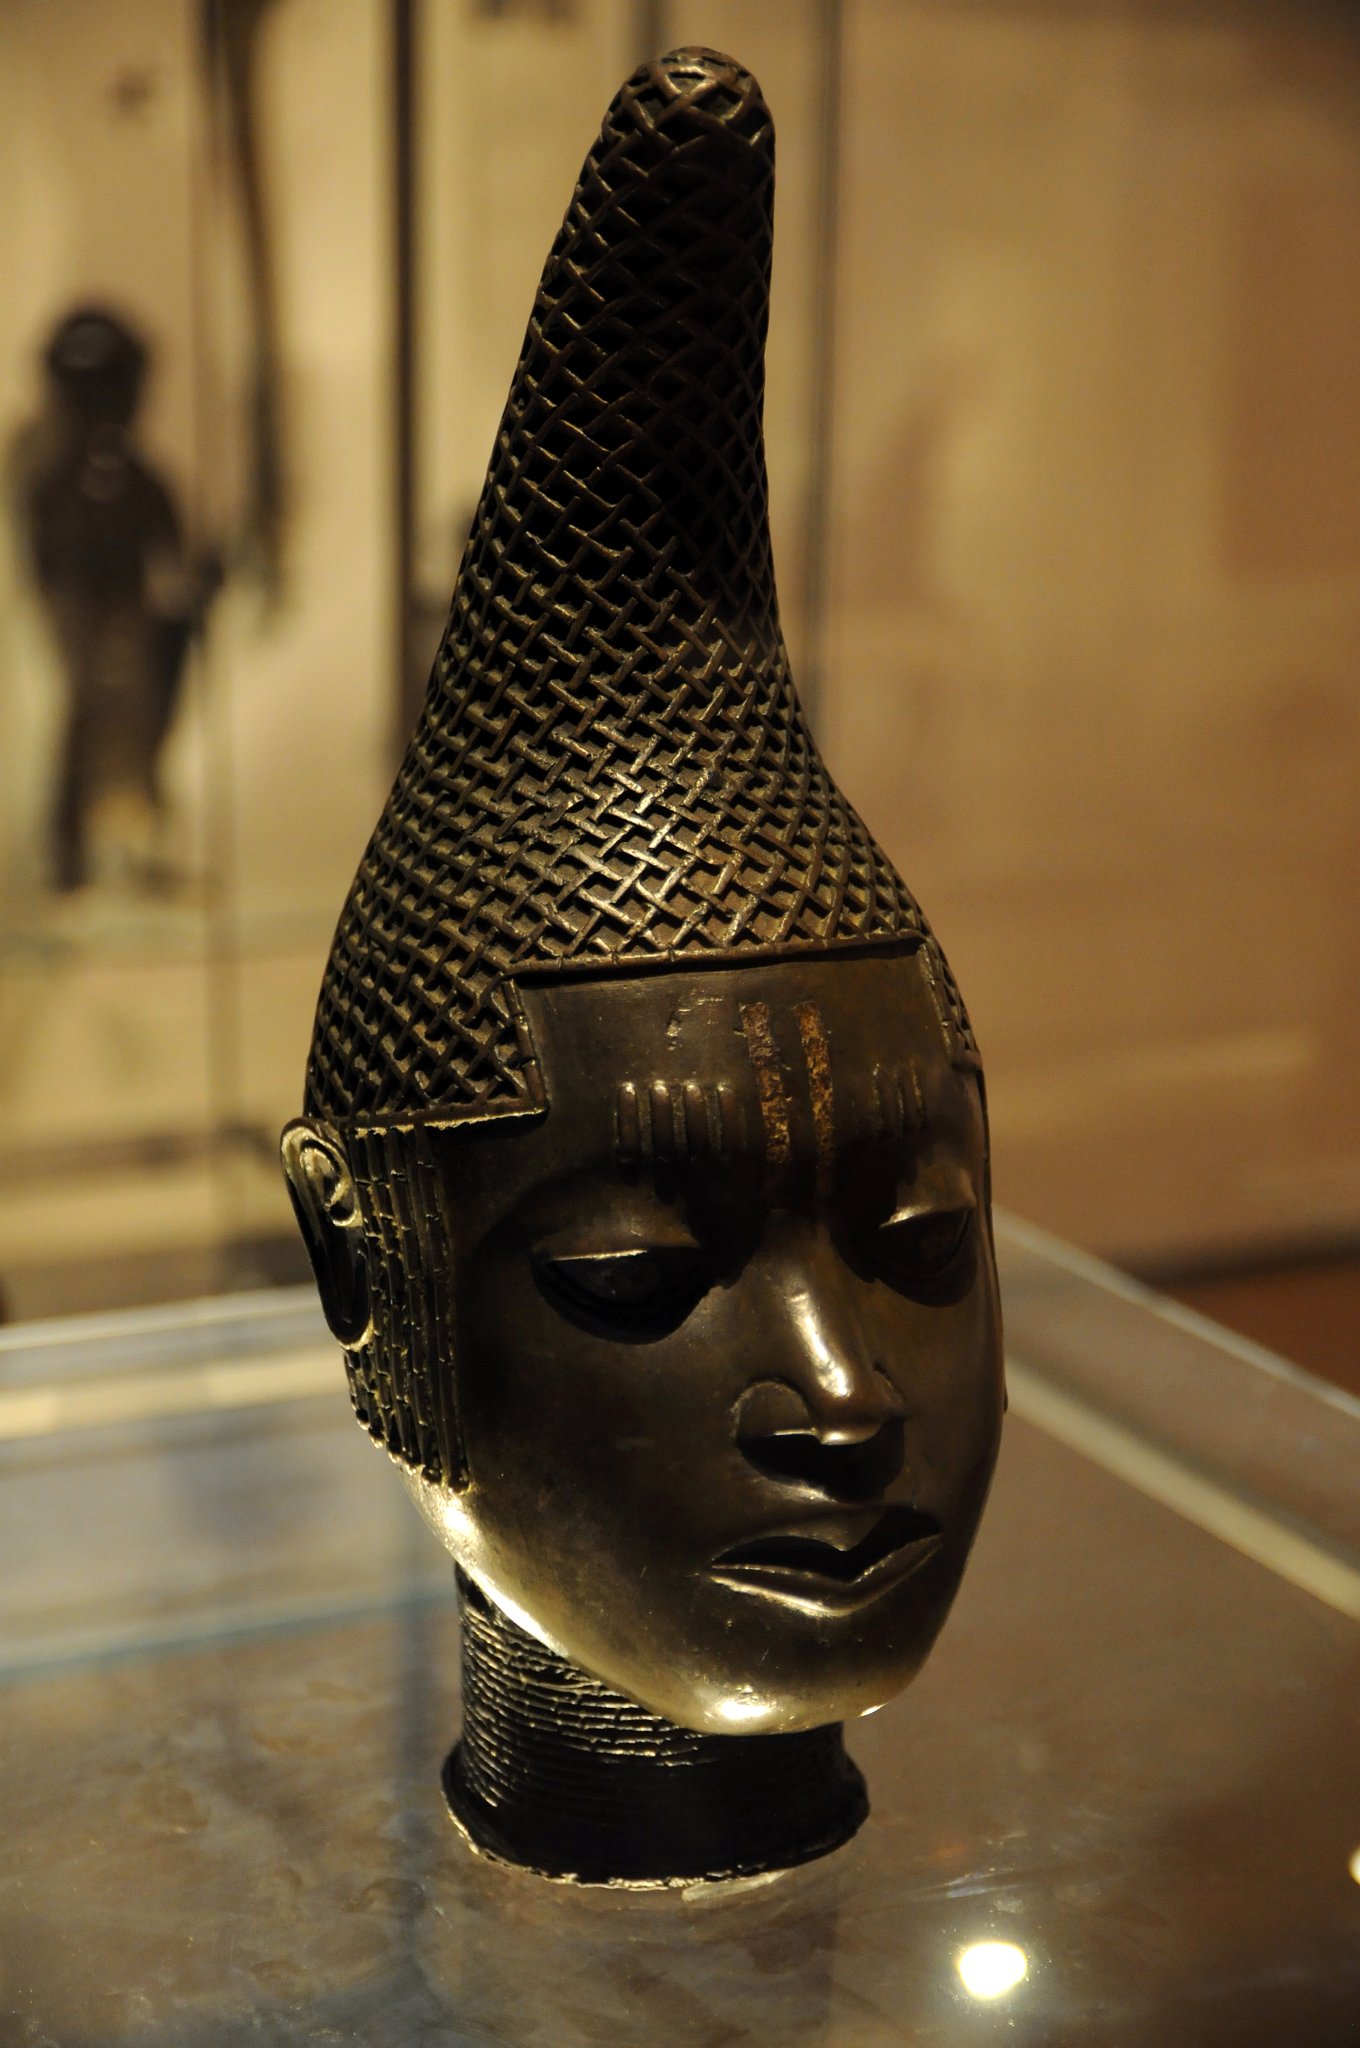 DSC_5977_2.jpg - Mozasná hlava královny matky. Benin, Nigérie, 16. století našeho letopočtu. Královna Idia, matka Oba Esigie, krále Beninu hrála klíčovou roli při vojenských konfliktech svého syna v bojích s lidmi Igala o vládu nad povodím Nigeru. Benin nakonec tento boj vyhrál. Říká se, že Oba Esigie zavedl titul Královna matka a založil tradici odlévání hlav.